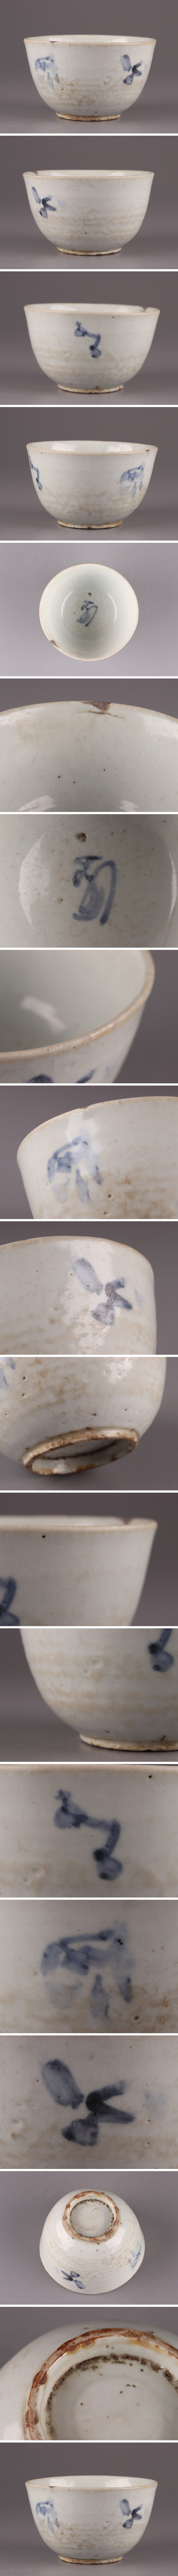 人気最安値古美術 朝鮮古陶磁器 李朝 白磁 染付 茶碗 時代物 極上品 初だし品 4180 李朝